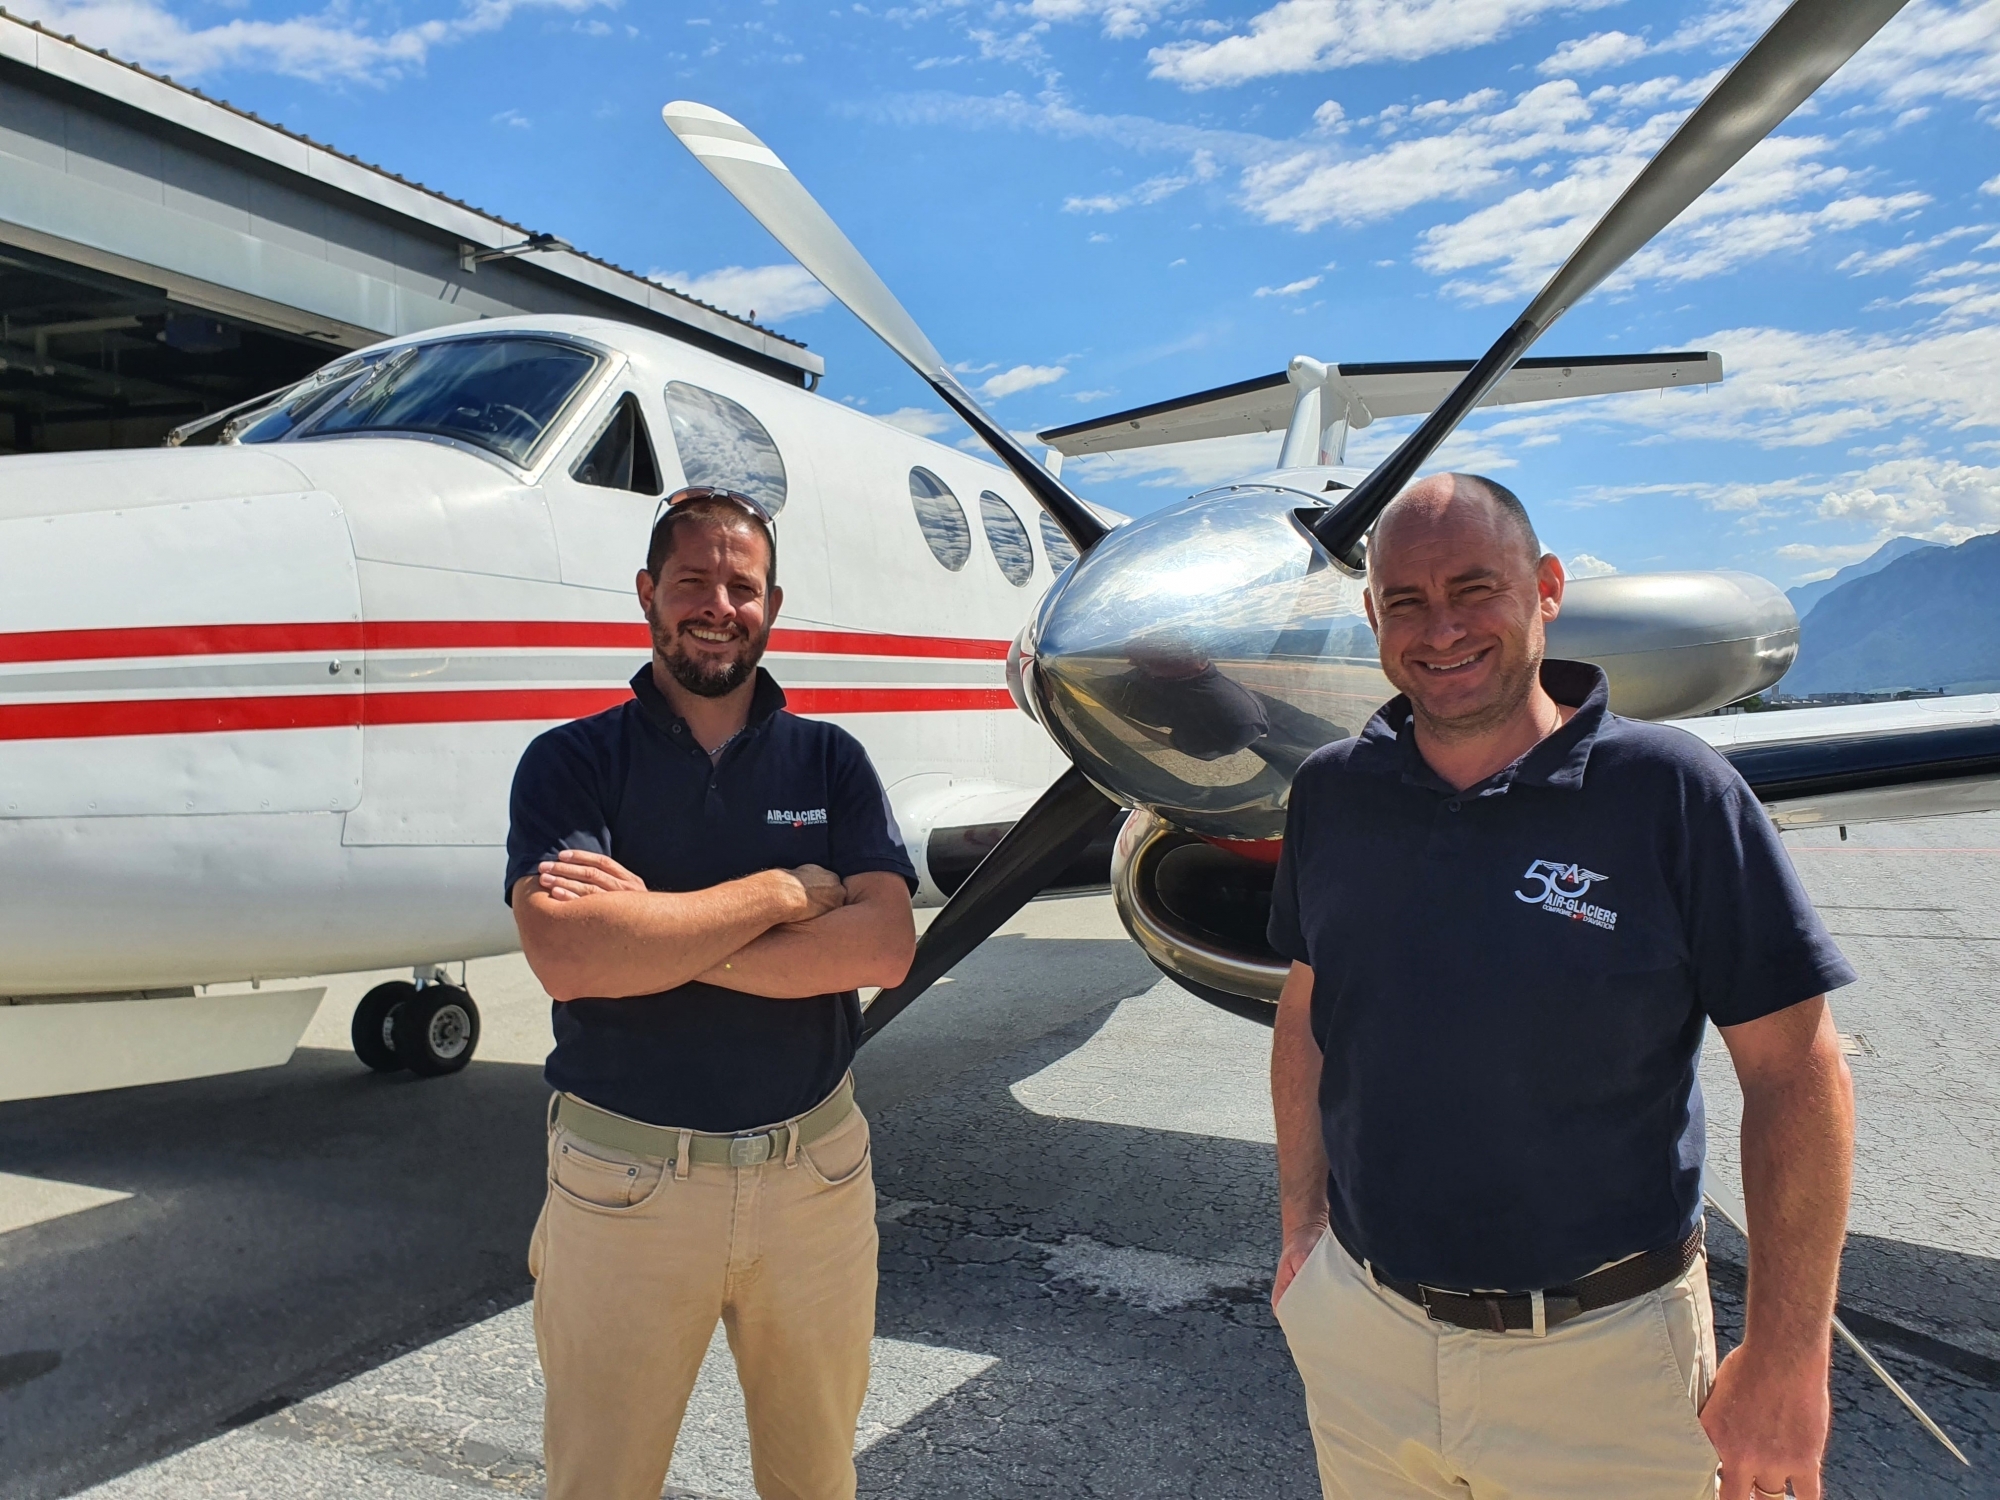 Les pilotes Guy Antoine Regamey, d'Ayent, et Raphaël Délèze, de Nendaz, ont repris les activités d'aviation d'Air-Glaciers, à l'enseigne d'Air Mountain.